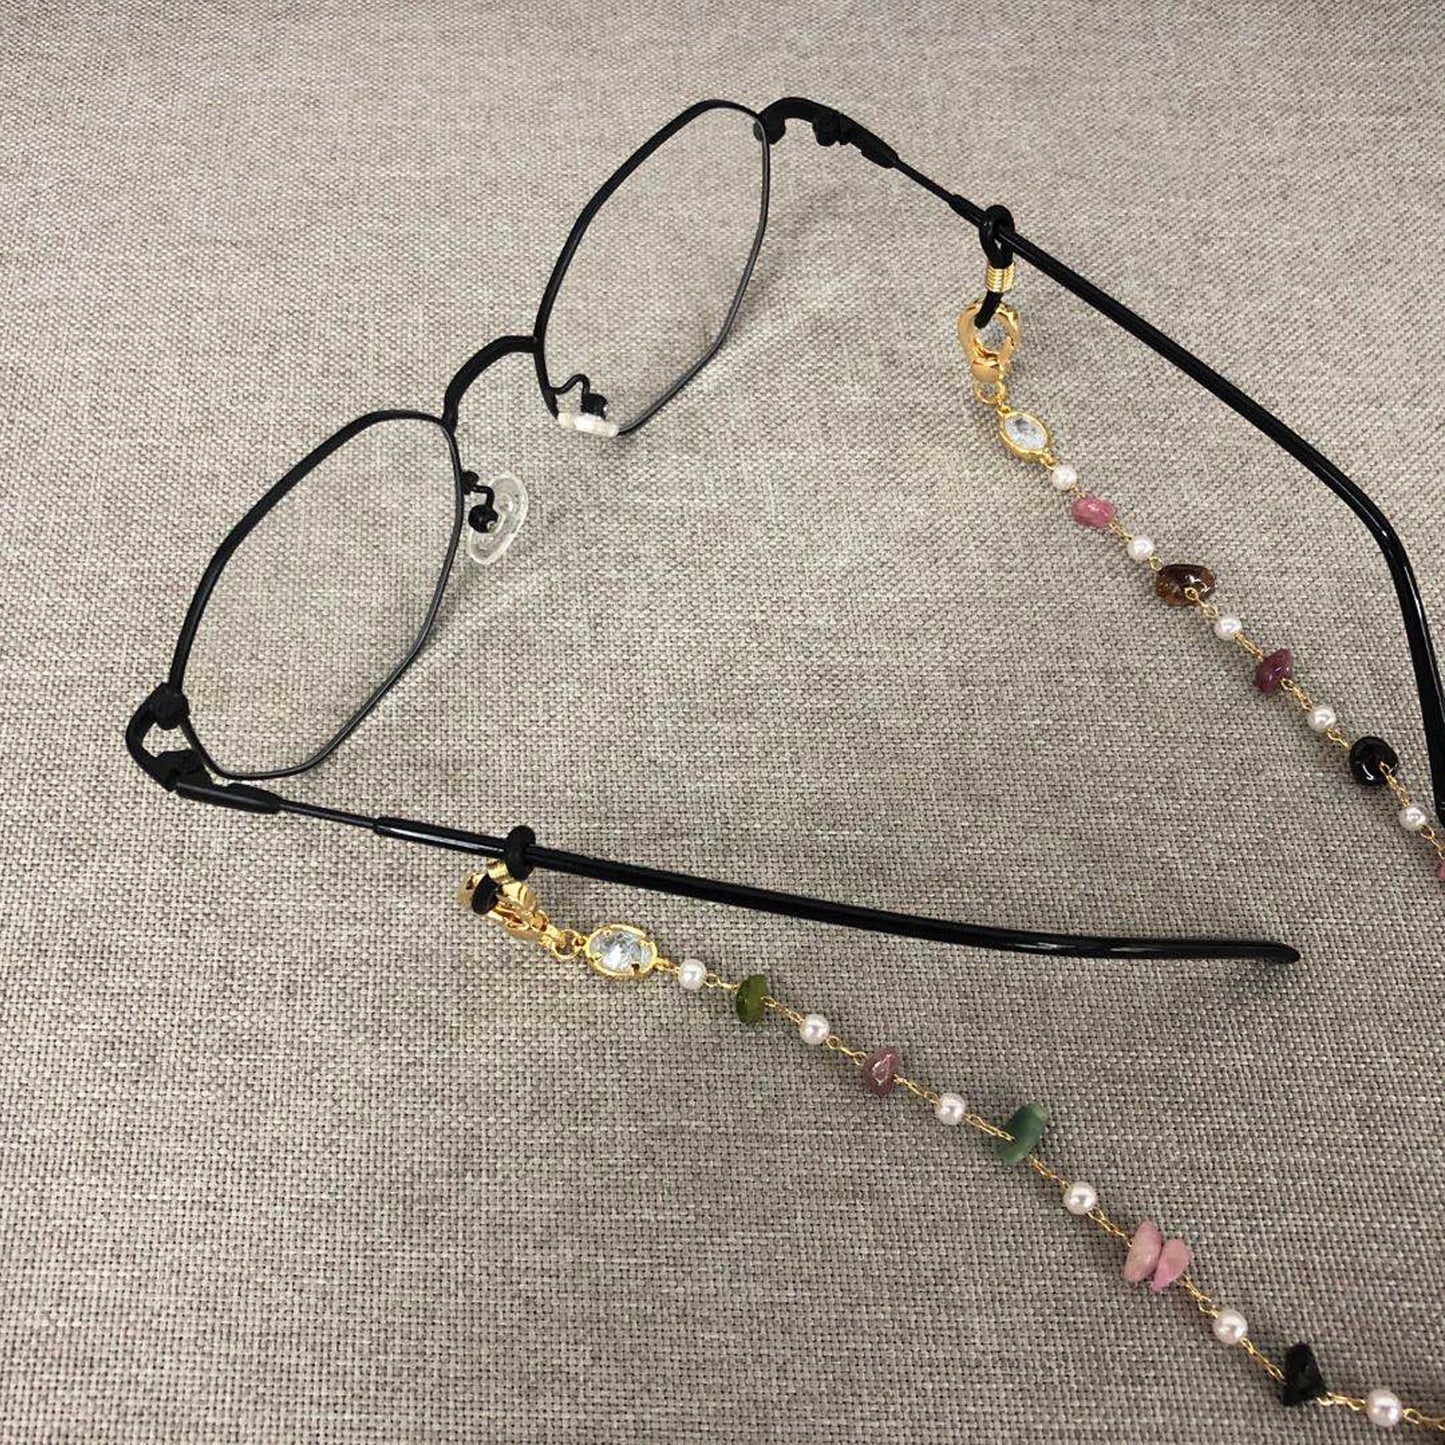 GUFEATHER M832, accessoires de bijoux, chaîne de sangle de lunettes, pass REACH, sans nickel, plaqué or 18 carats, chaîne de mode, chaîne de masque, 75 cm/pièces 